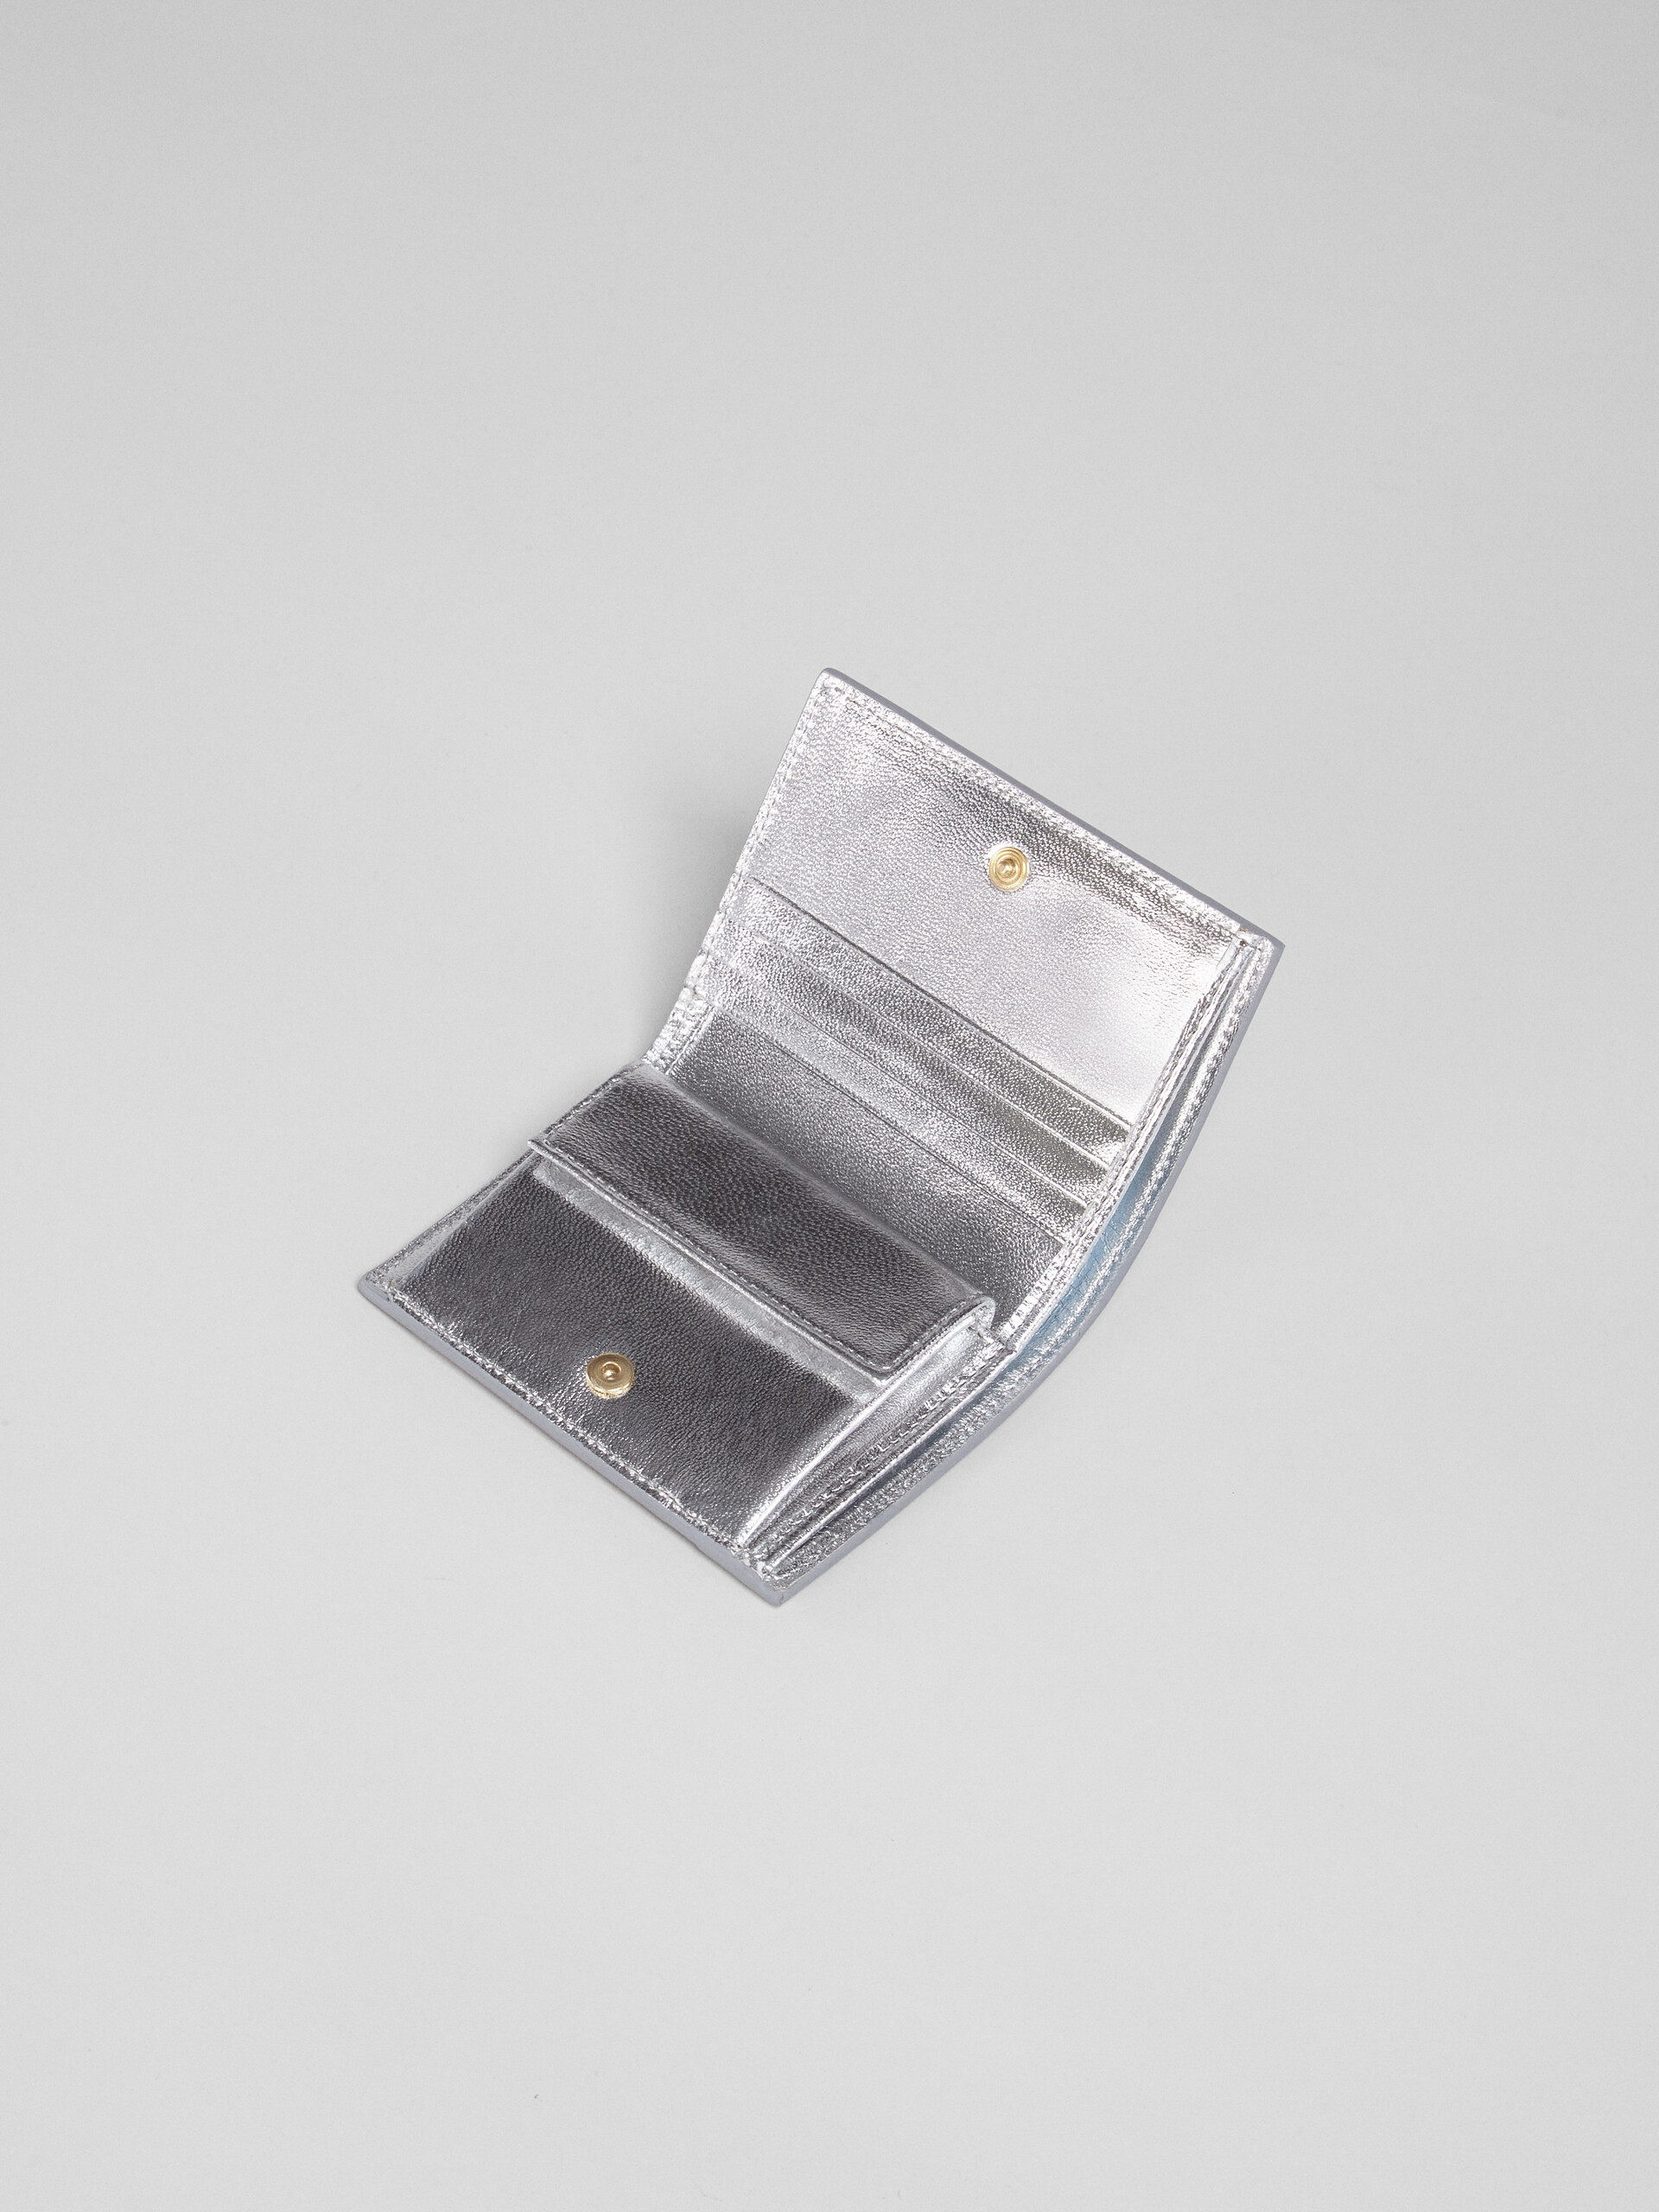 Silver metallic leather bi-fold wallet - Wallets - Image 3